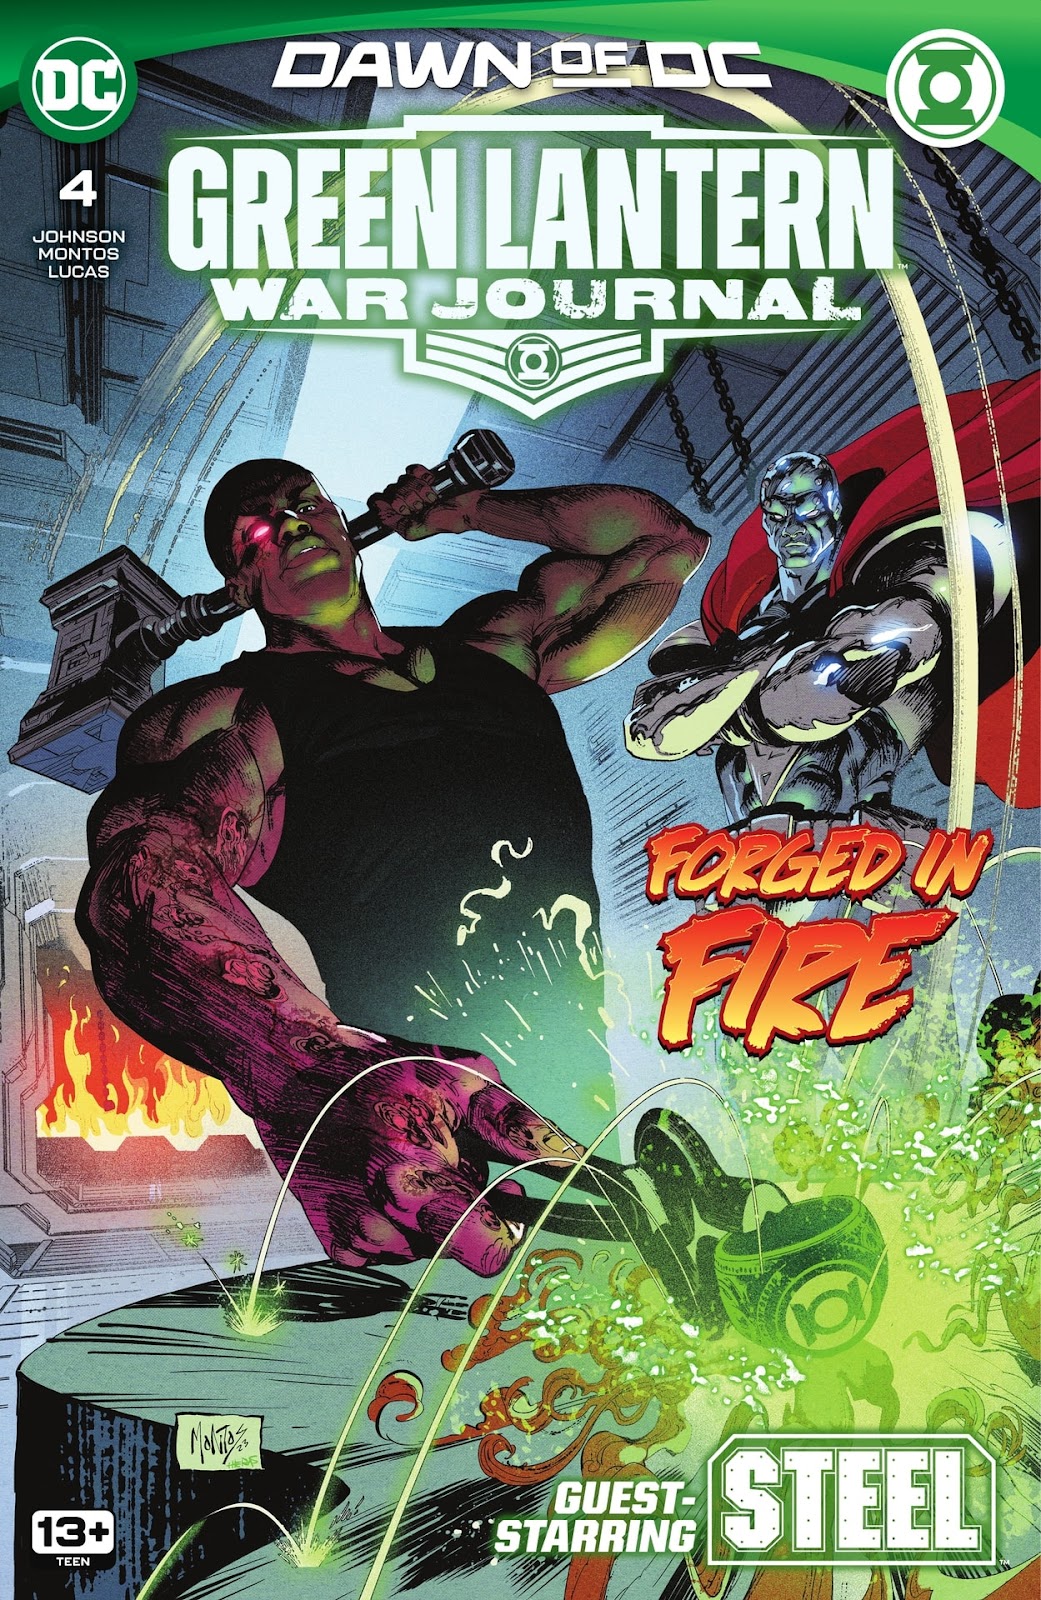 Green Lantern: War Journal issue 4 - Page 1